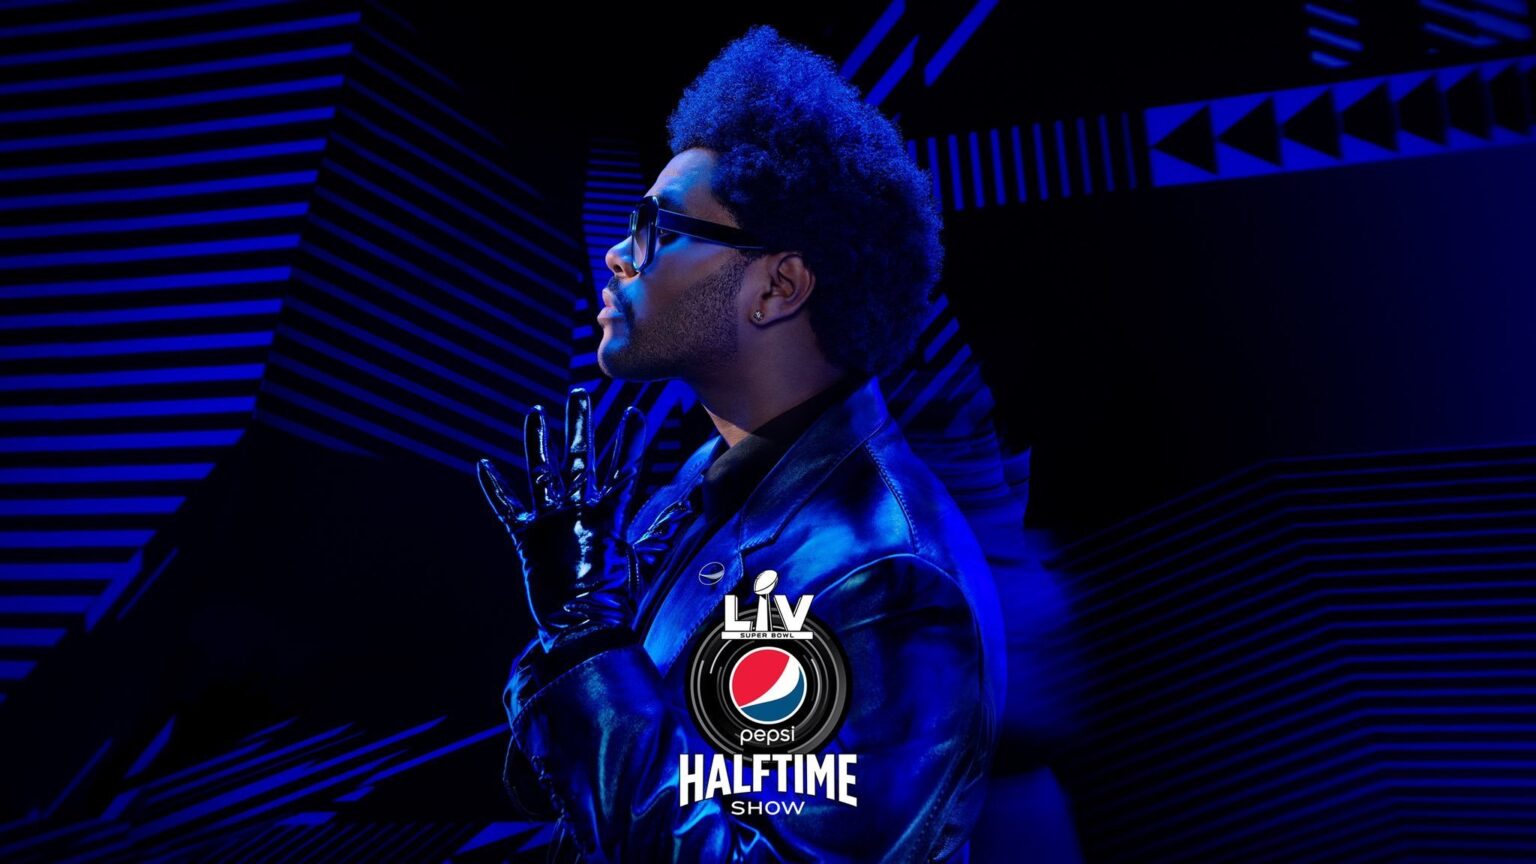 ¿The Weeknd se presentará en el Super Bowl con el look de 'After Hours'? Descubre todo lo que nos ha dejado ver el comercial de Pepsi.